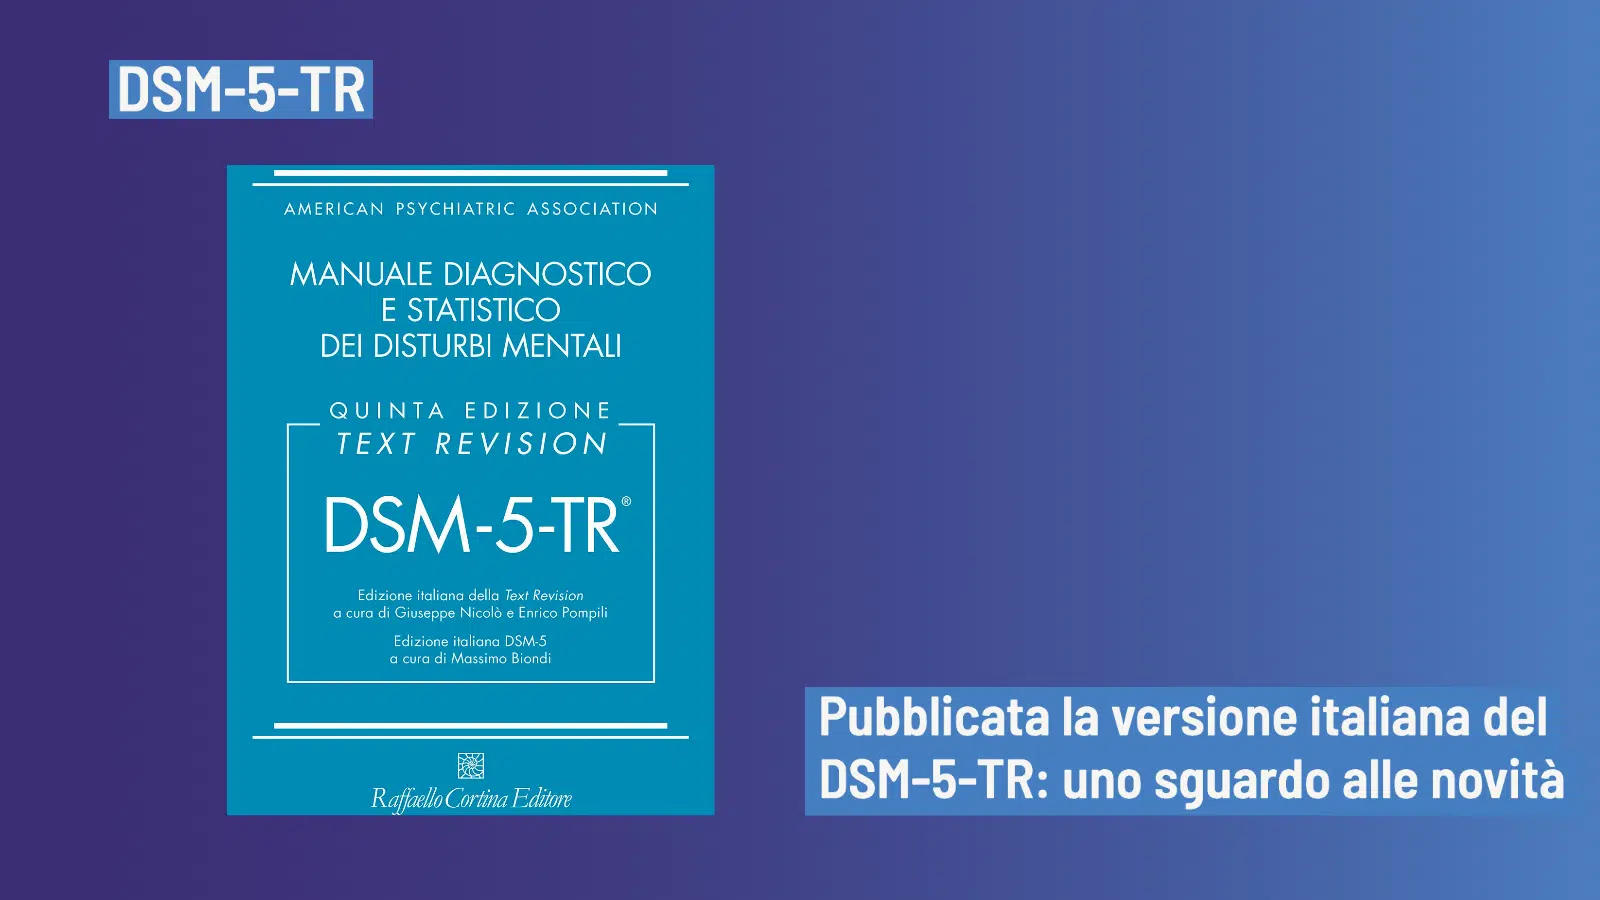 DSM-5-TR pubblicata la versione italiana quali novita